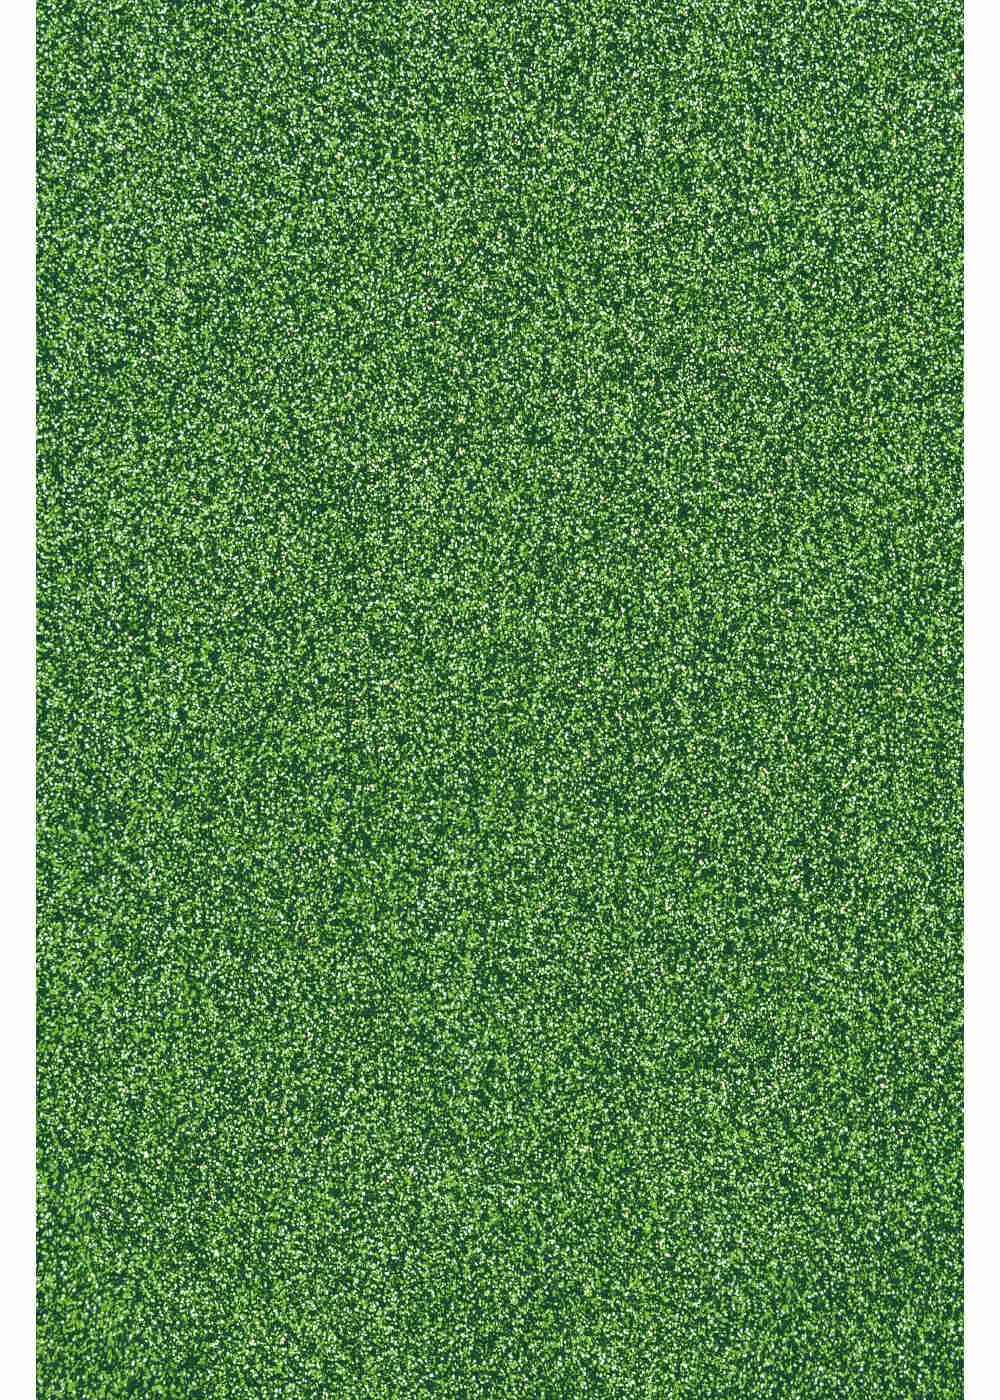 Hilltop Transparentpapier Glitzer Transferfolie/Textilfolie zum Aufbügeln, perfekt zum Plottern Light Green